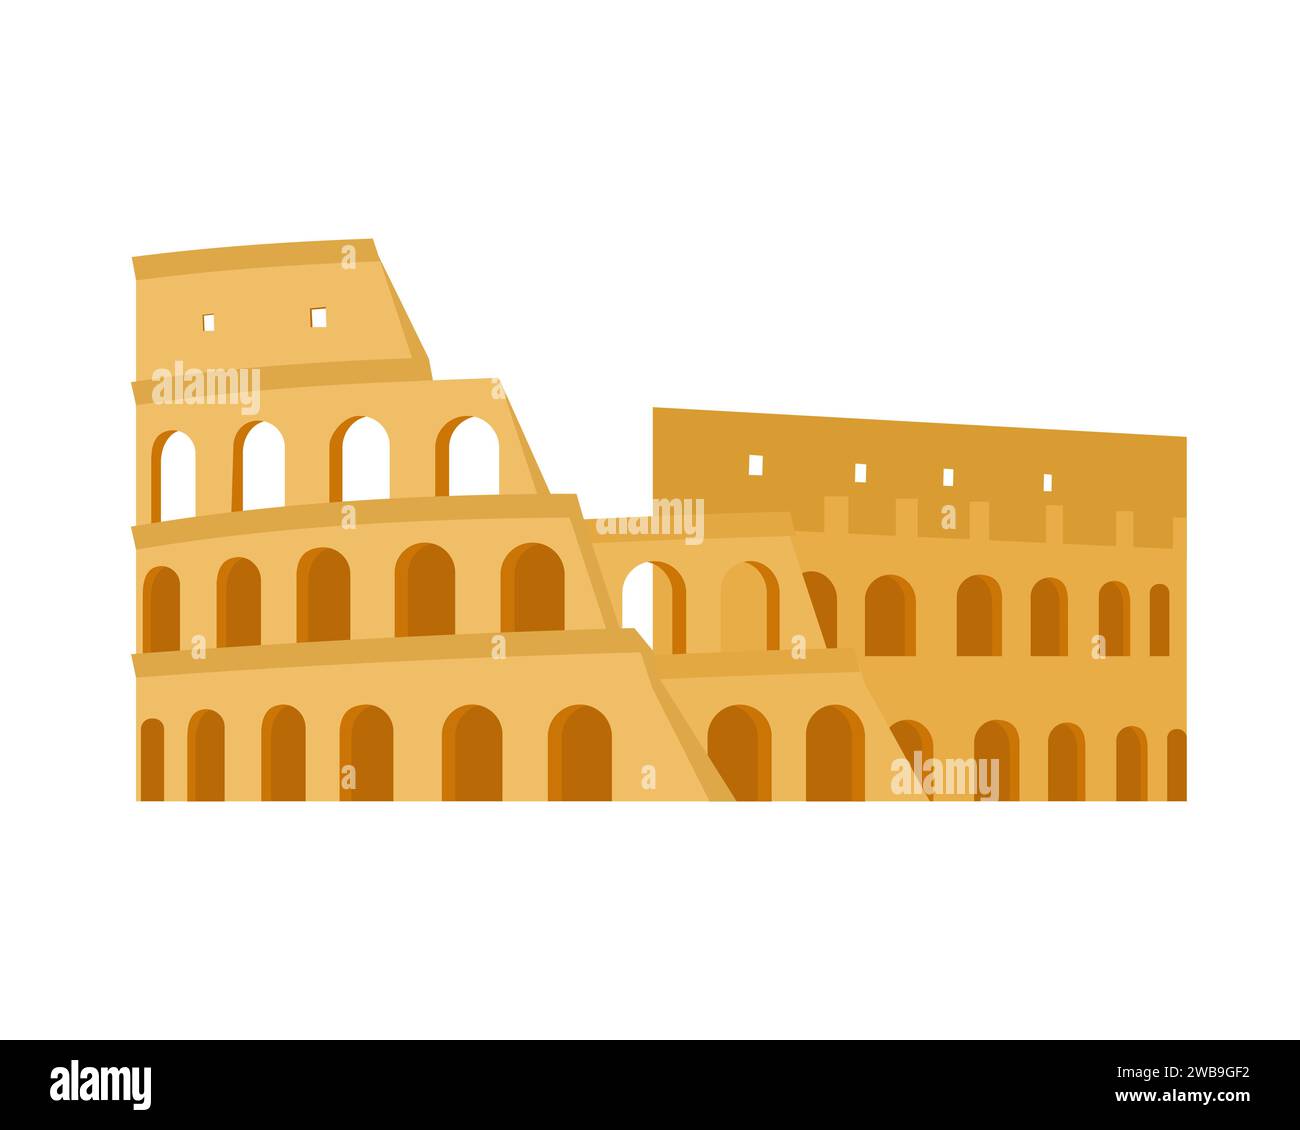 Antico monumento del Colosseo. Illustrazione vettoriale dei fumetti dell'antica architettura italiana famosa Illustrazione Vettoriale